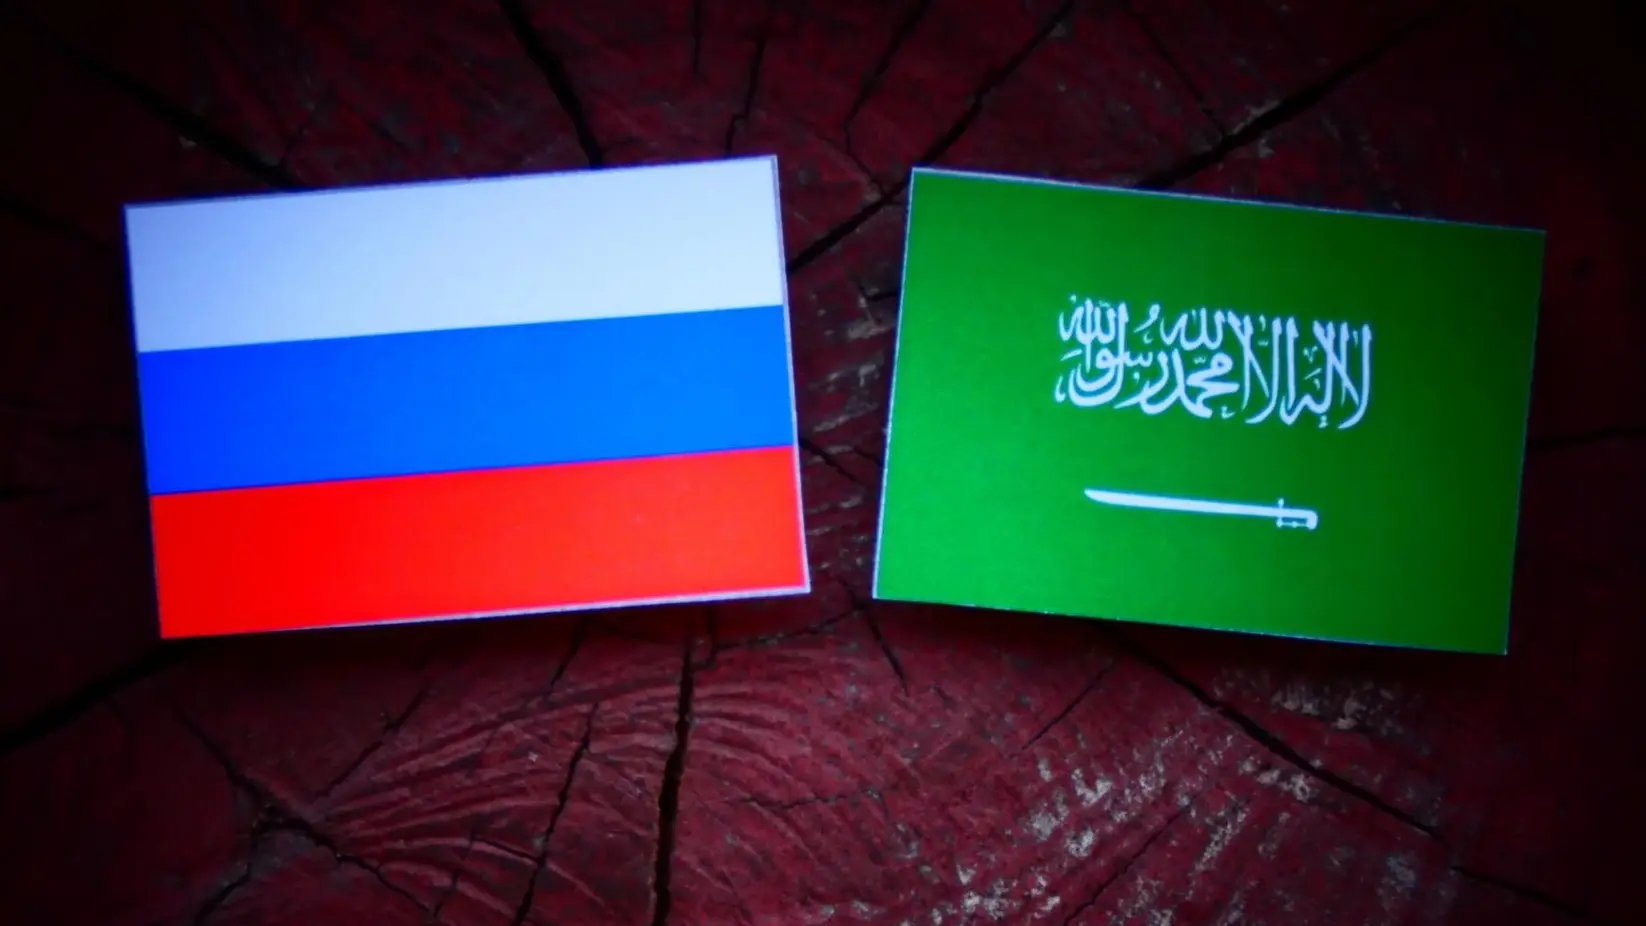 rusija, saudijska arabija, zastava rusije saudijske arabije, zastave, ruska zastava - profimedia-0342978120-66988bda7b8d8.webp